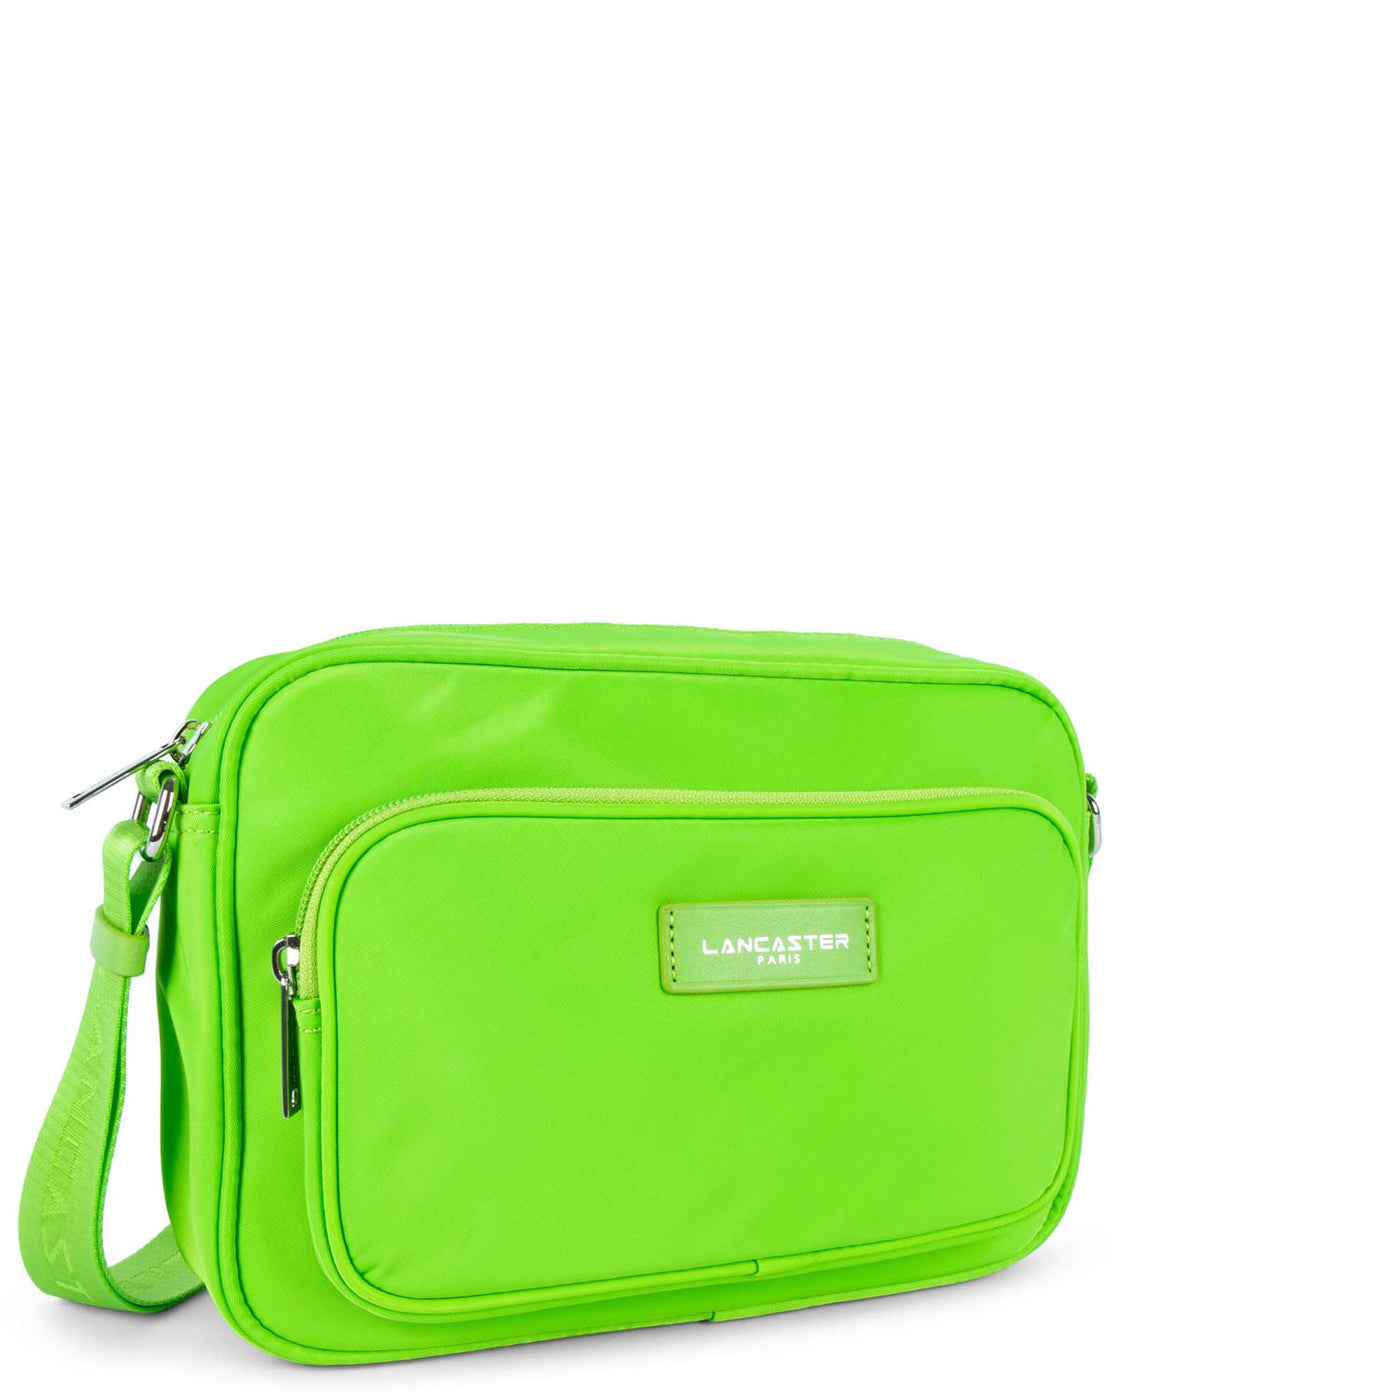 grand sac trotteur - basic vita #couleur_vert-clair